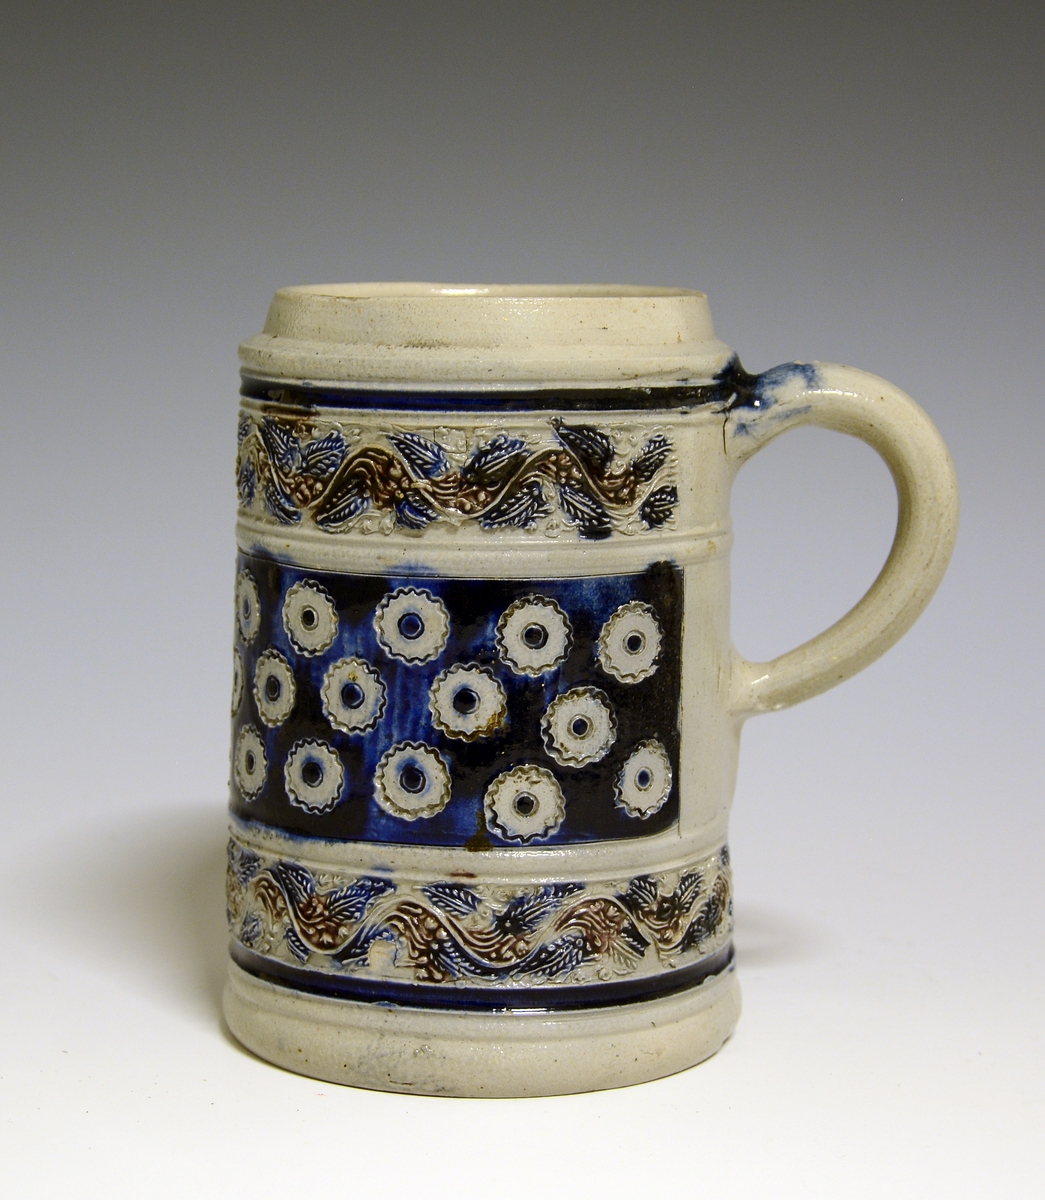 Ølkrus av steintøy med hank. Dekorert med border og mønster i relieff, i blått og manganrødt.

Prot: Tysk keramikk.
